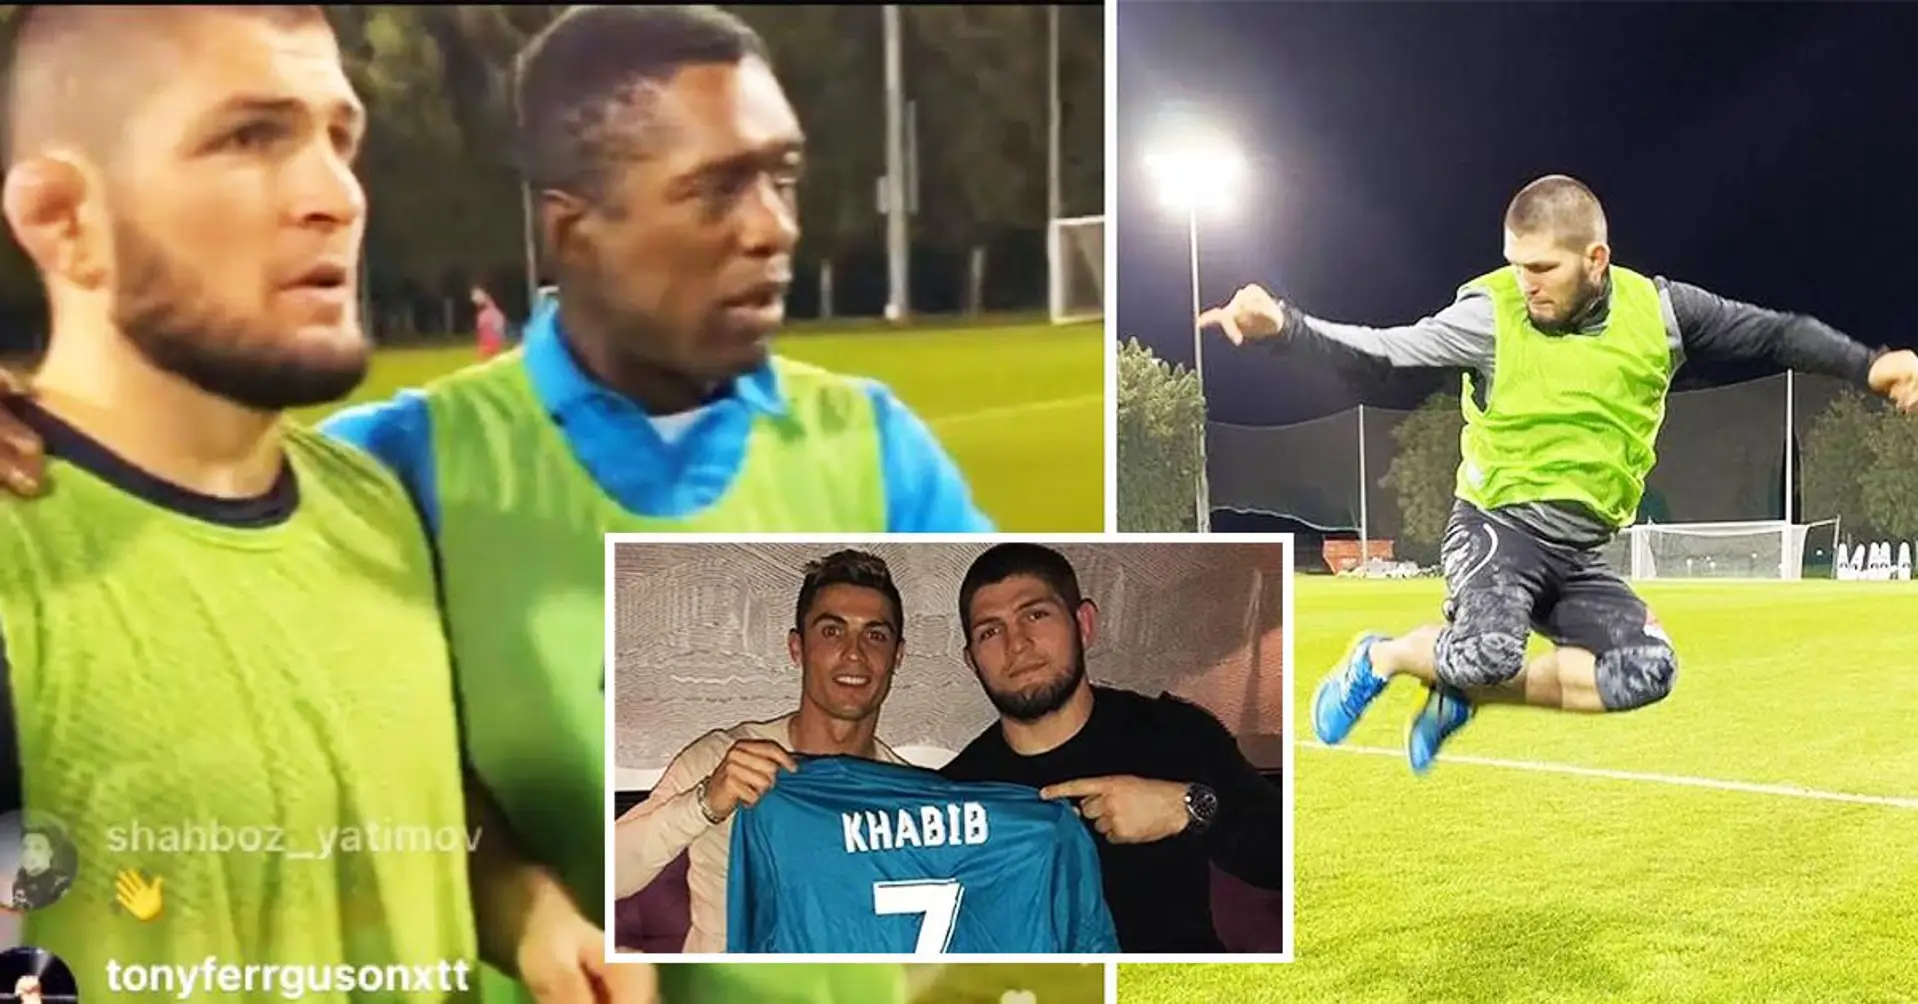 "Ich bin ein Free Agent, der bereit ist, Angebote anzunehmen": Khabib bereitet sich auf das Profifußballdebüt vor